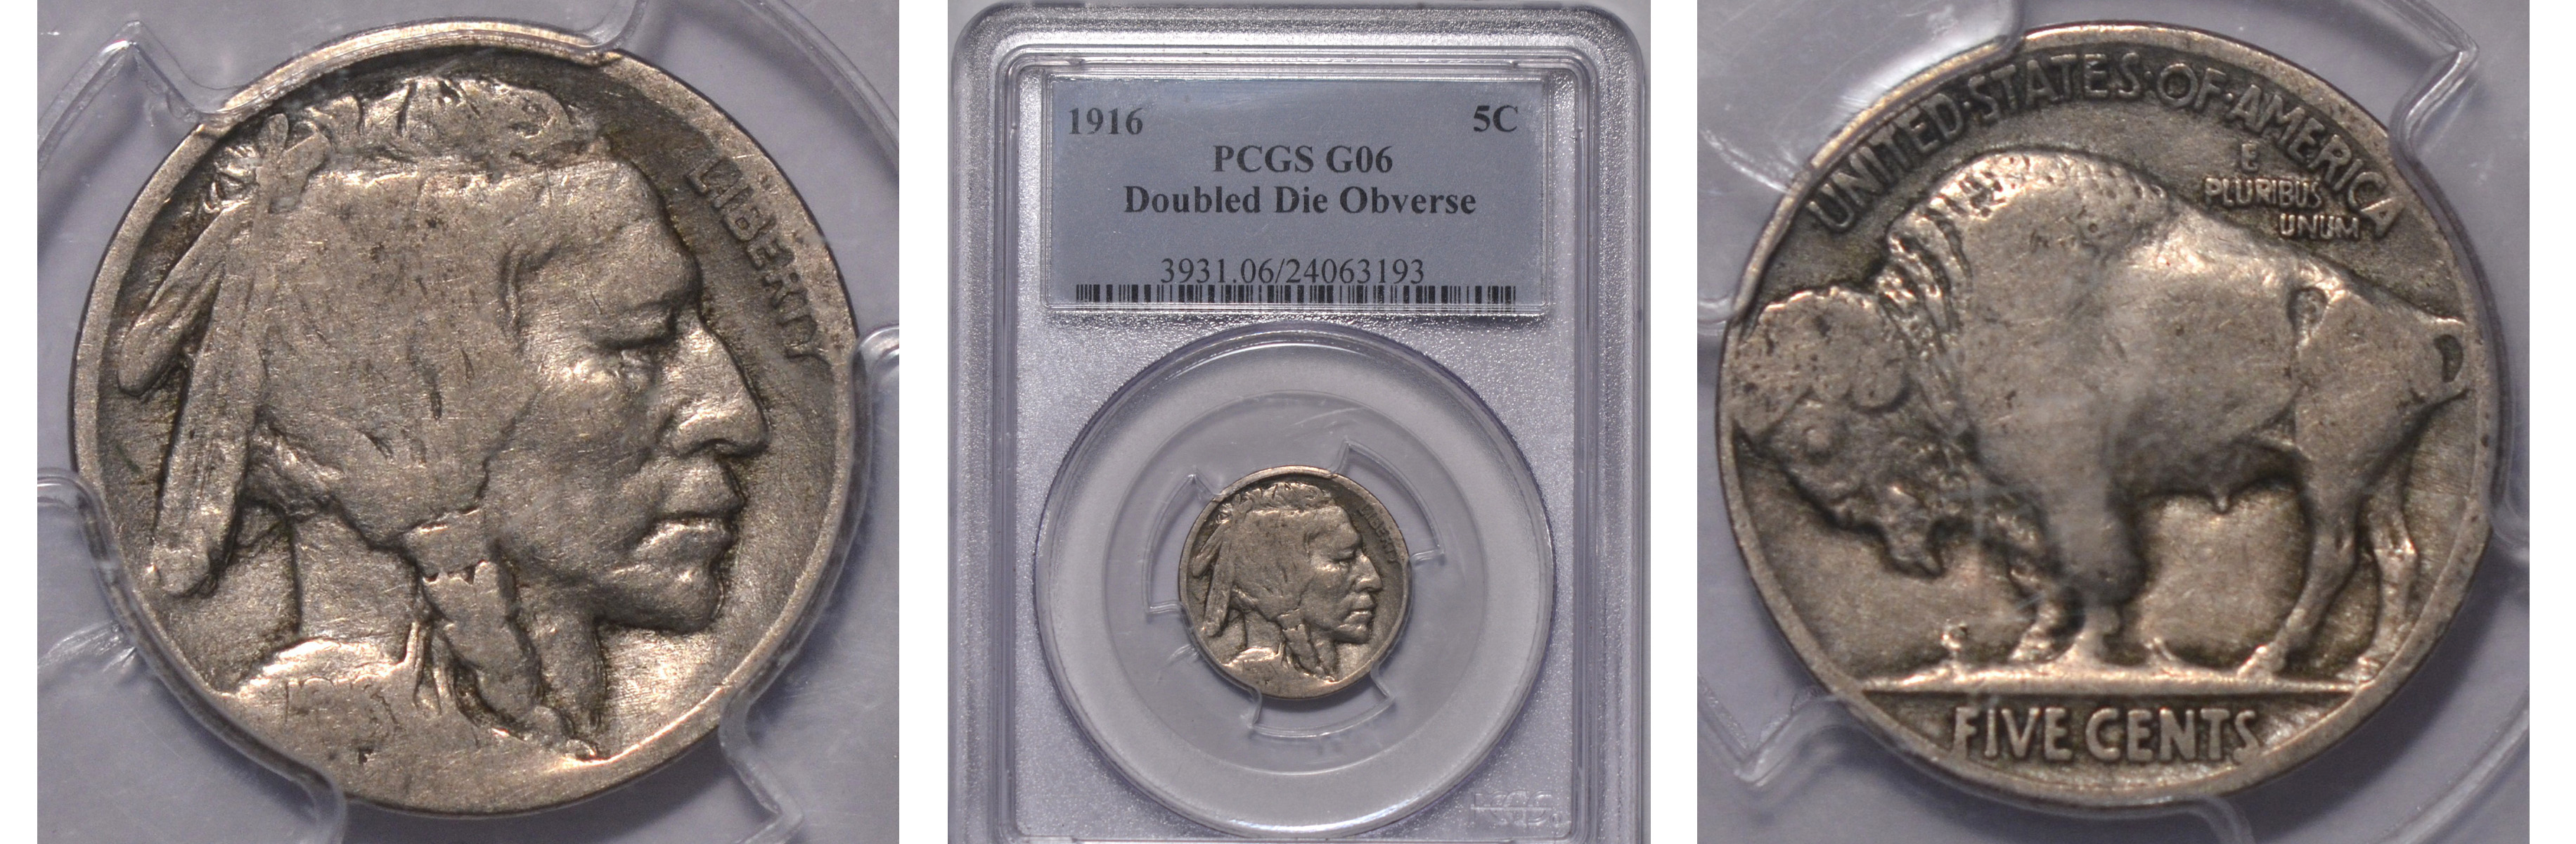 1916/1916 PCGS GD06 Buffalo Nickel